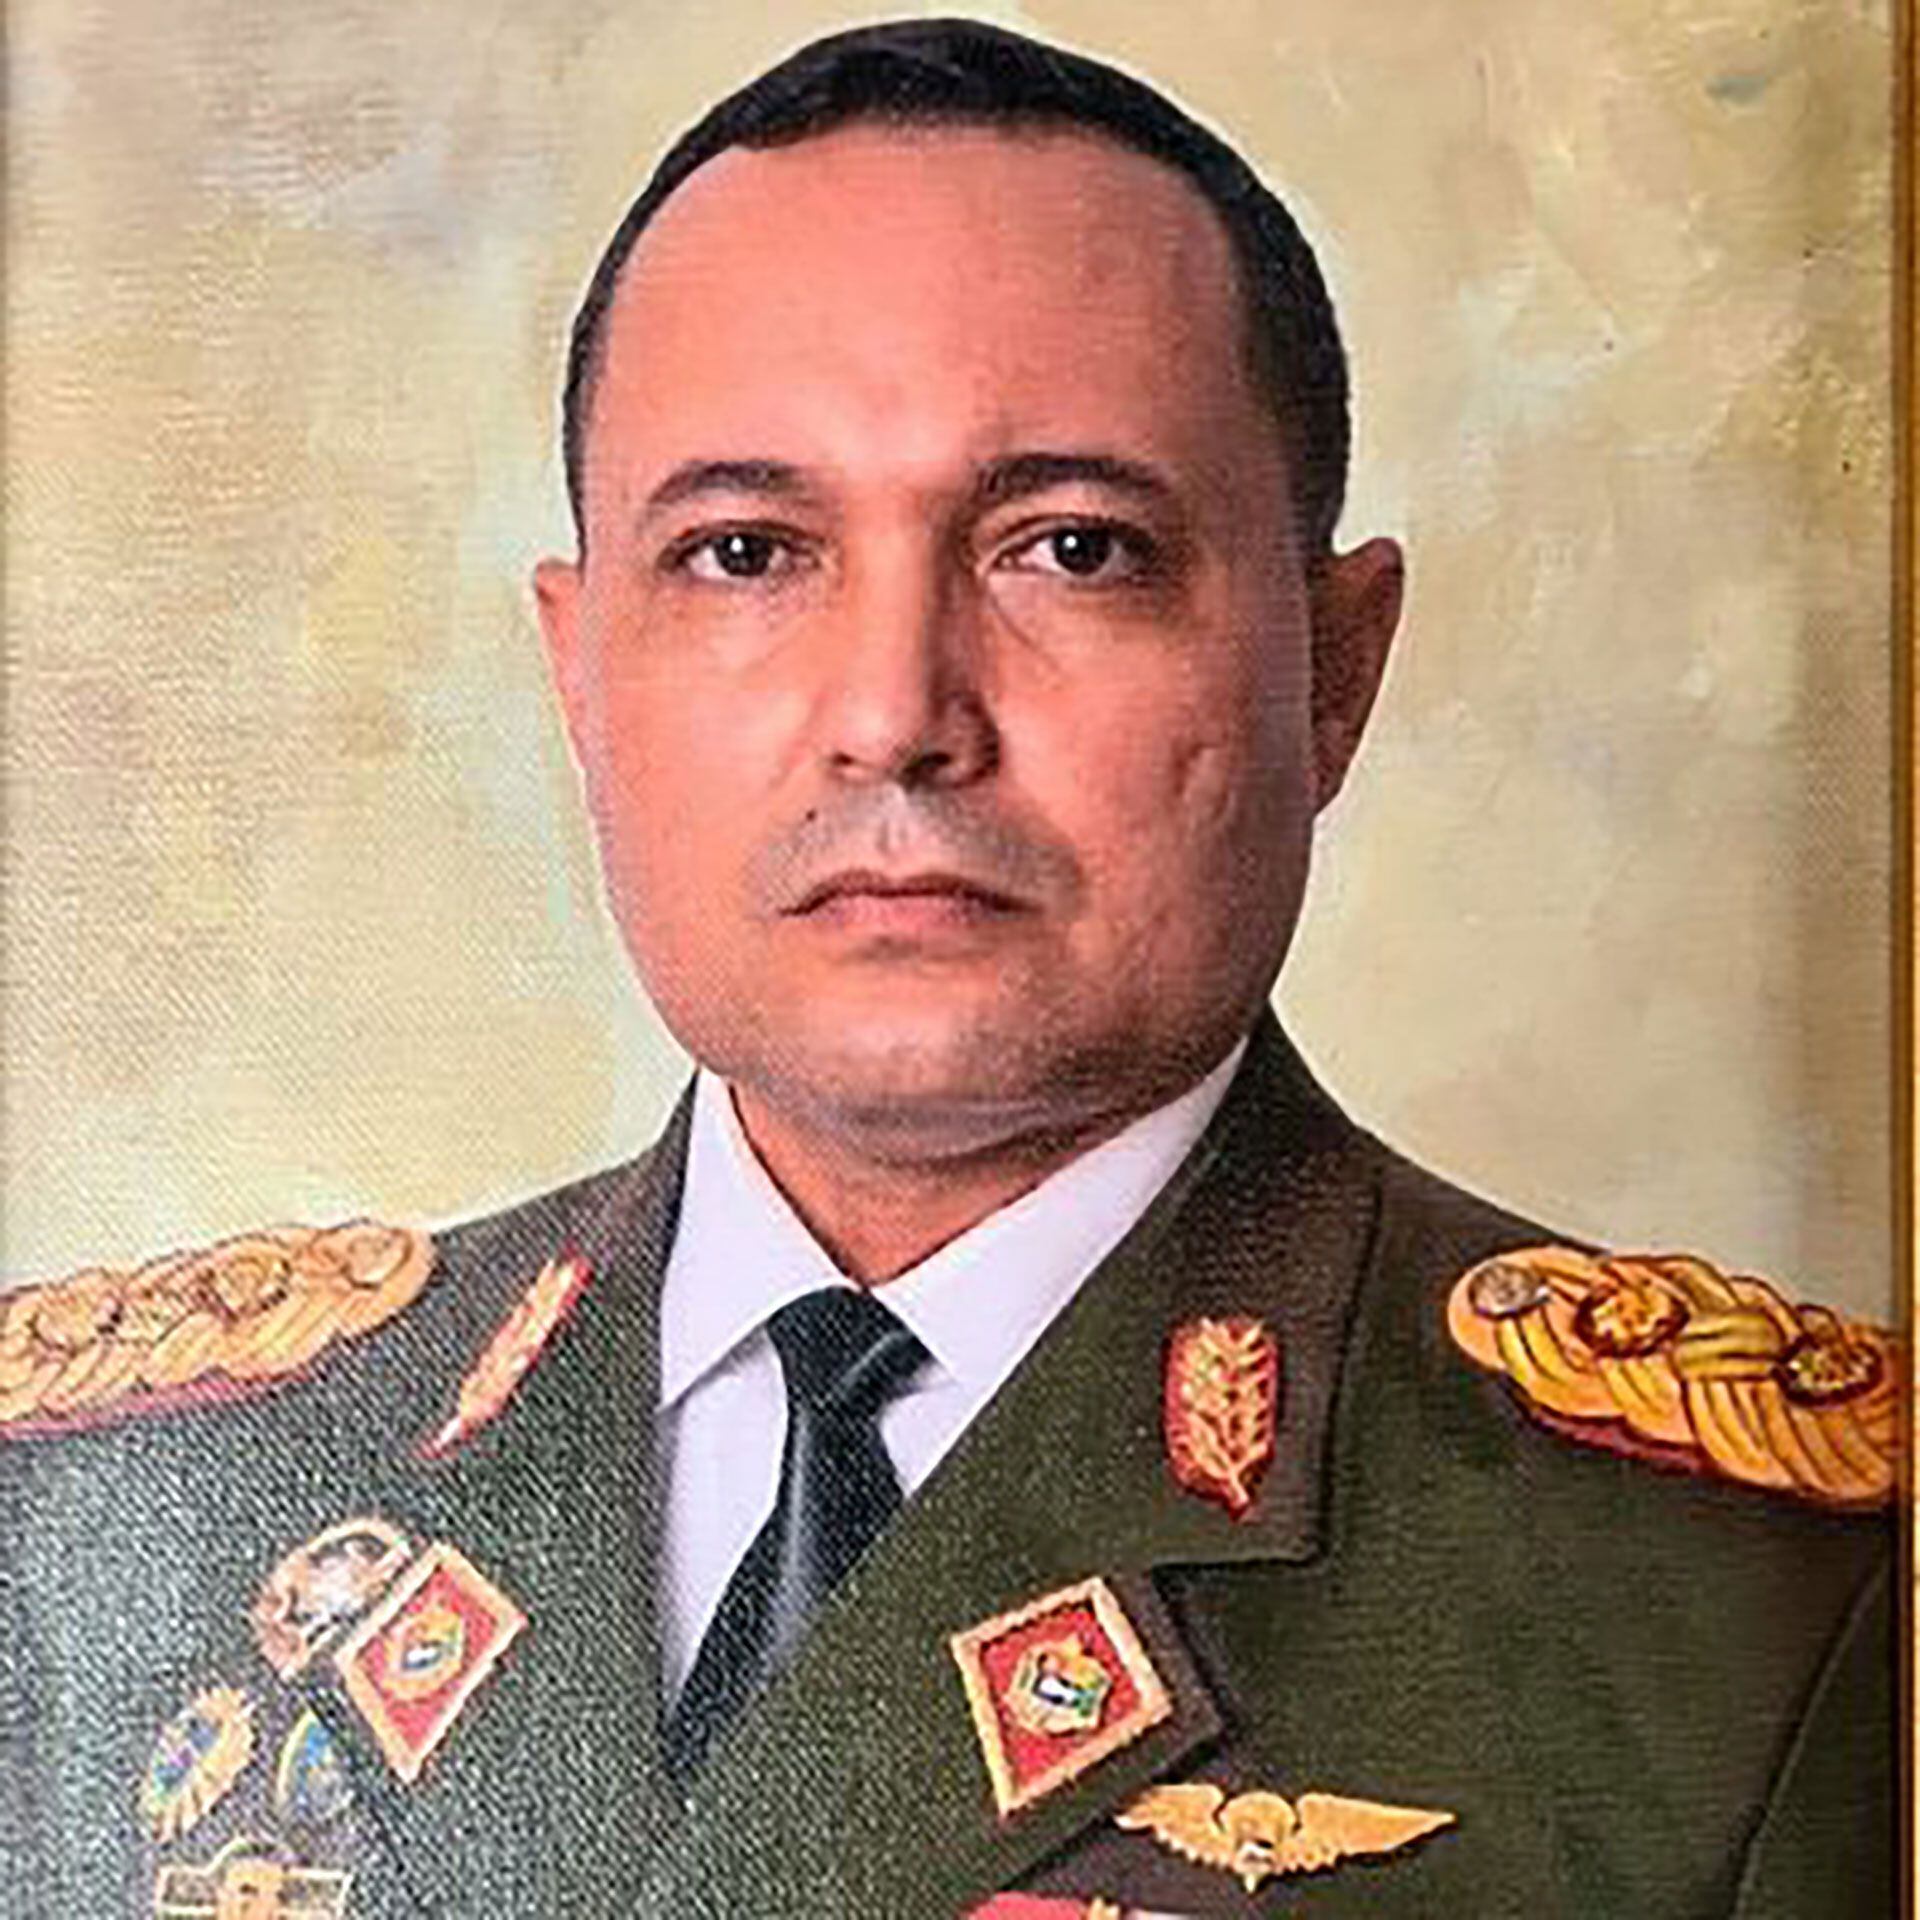 General de División (GD) Johnny Alberto Núñez Rincón al frente del Sexto Cuerpo de Ingenieros del Ejército